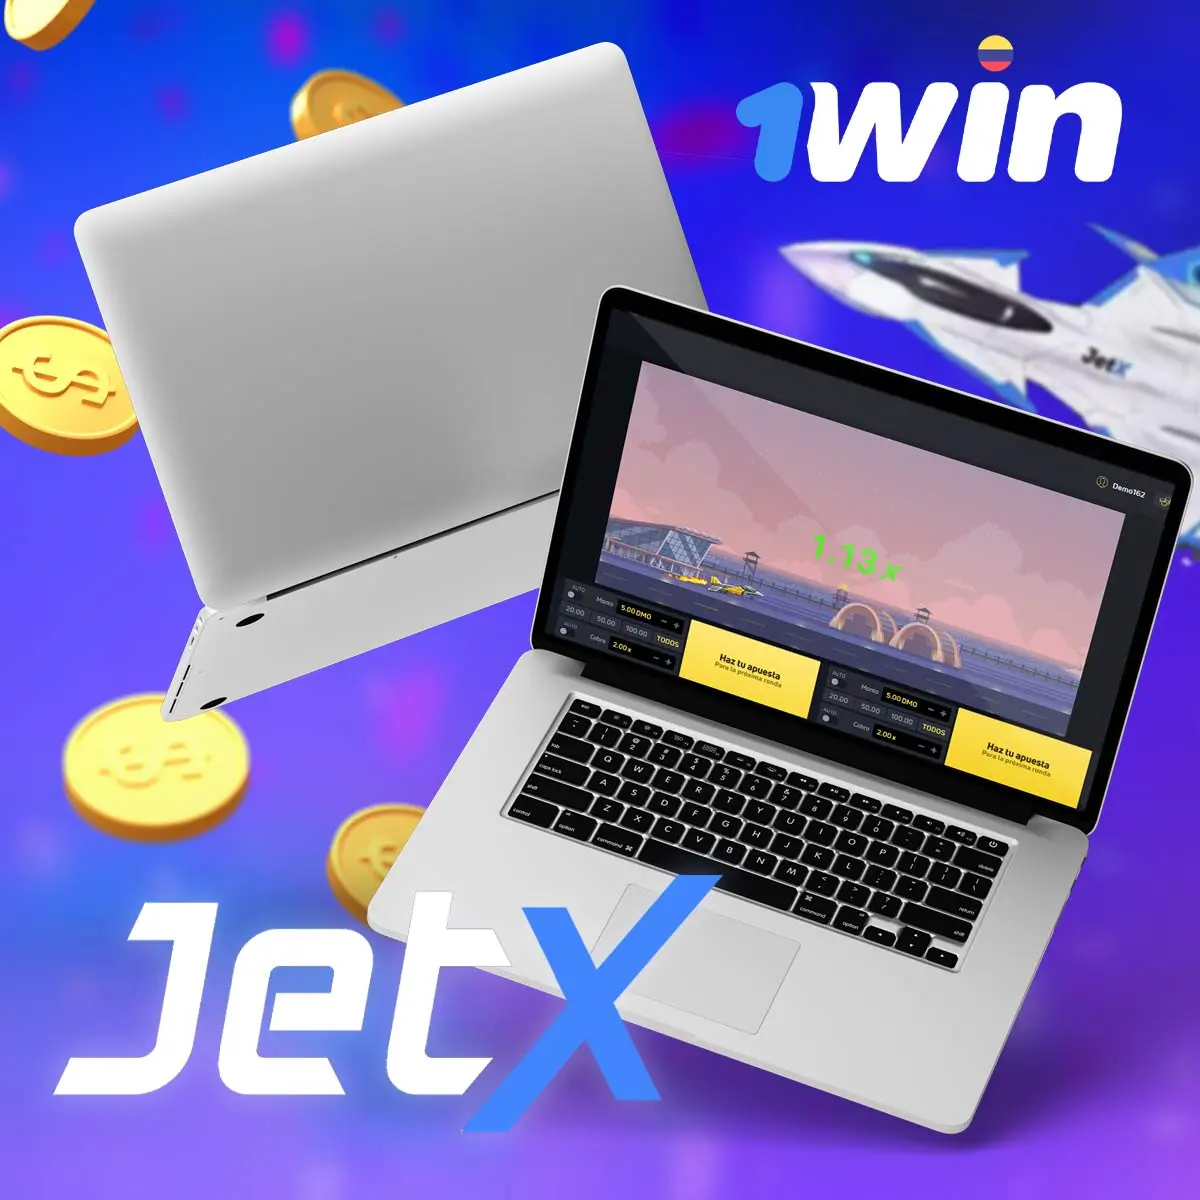 El modo demo de JetX 1win te permite elaborar estrategias de juego sin arriesgar dinero